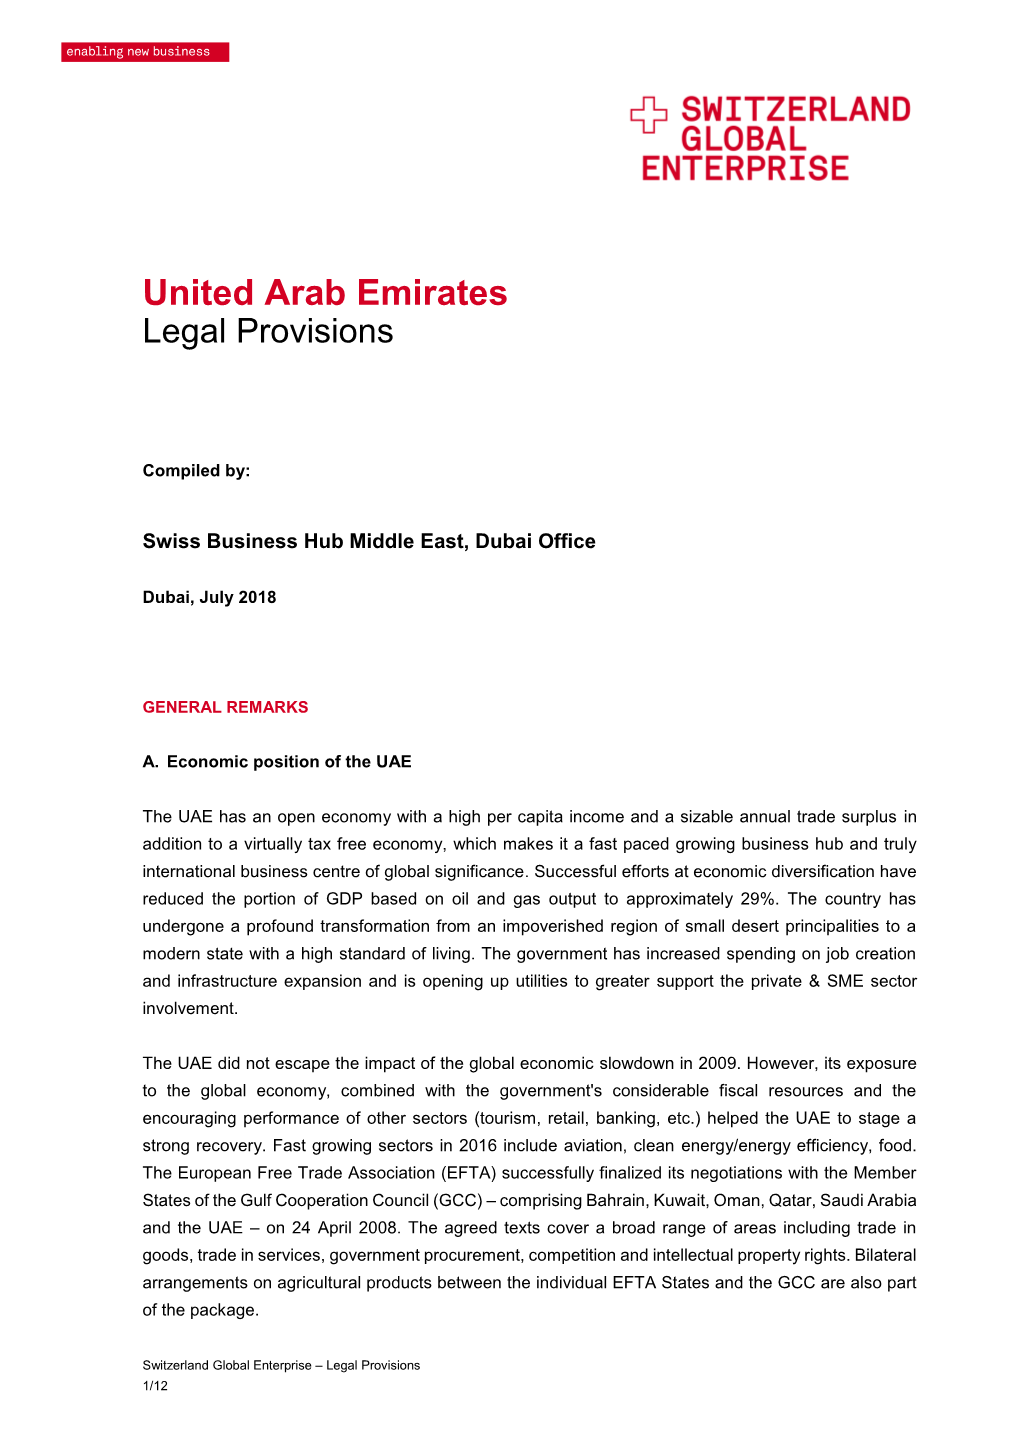 United Arab Emirates Legal Provisions